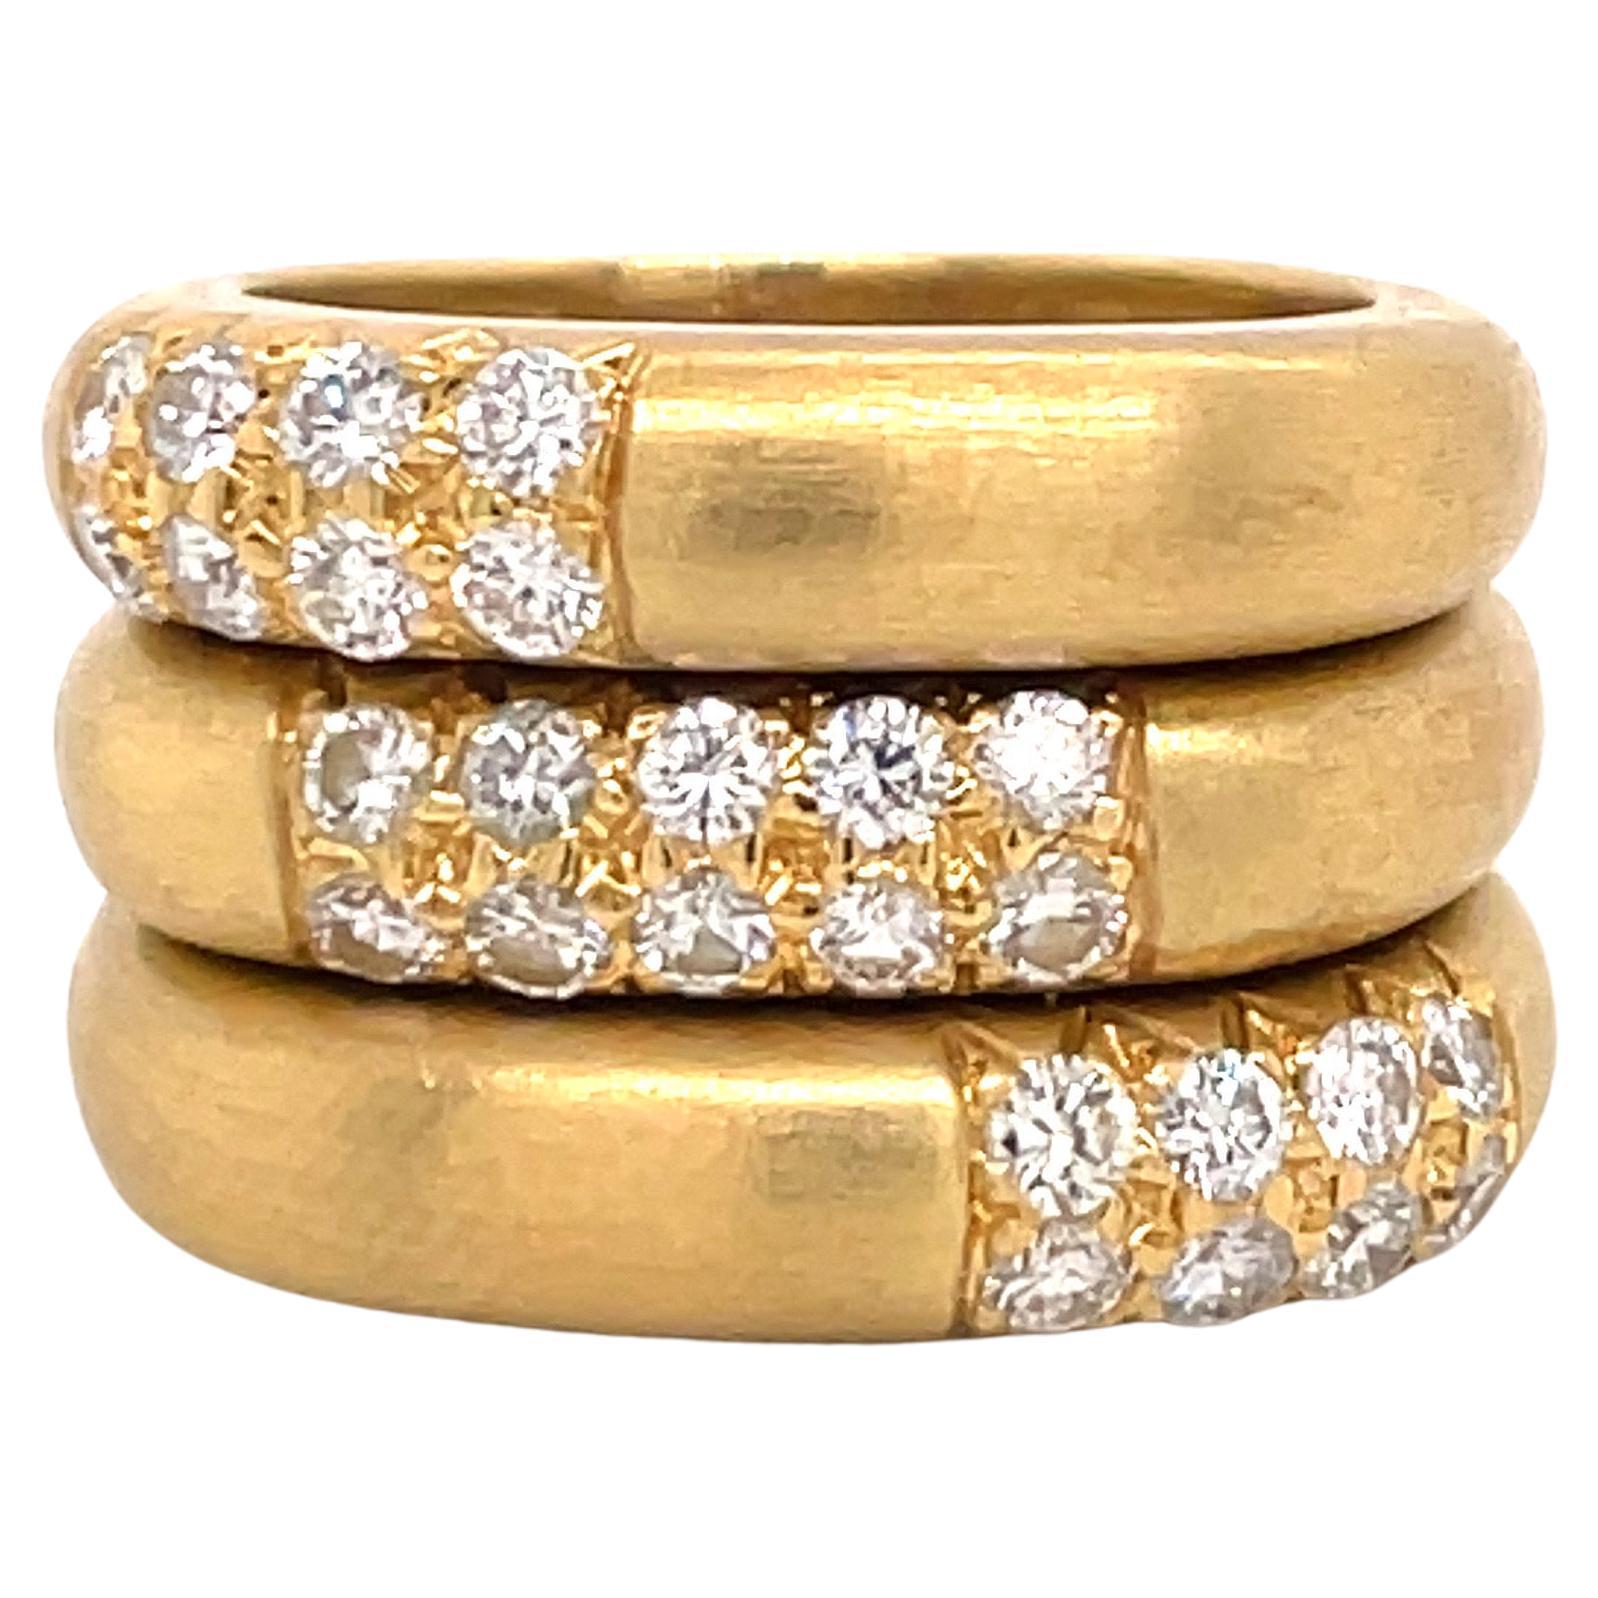 Bagues empilables en or jaune 18 carats avec diamants 0,40 carat, 20,9 grammes 